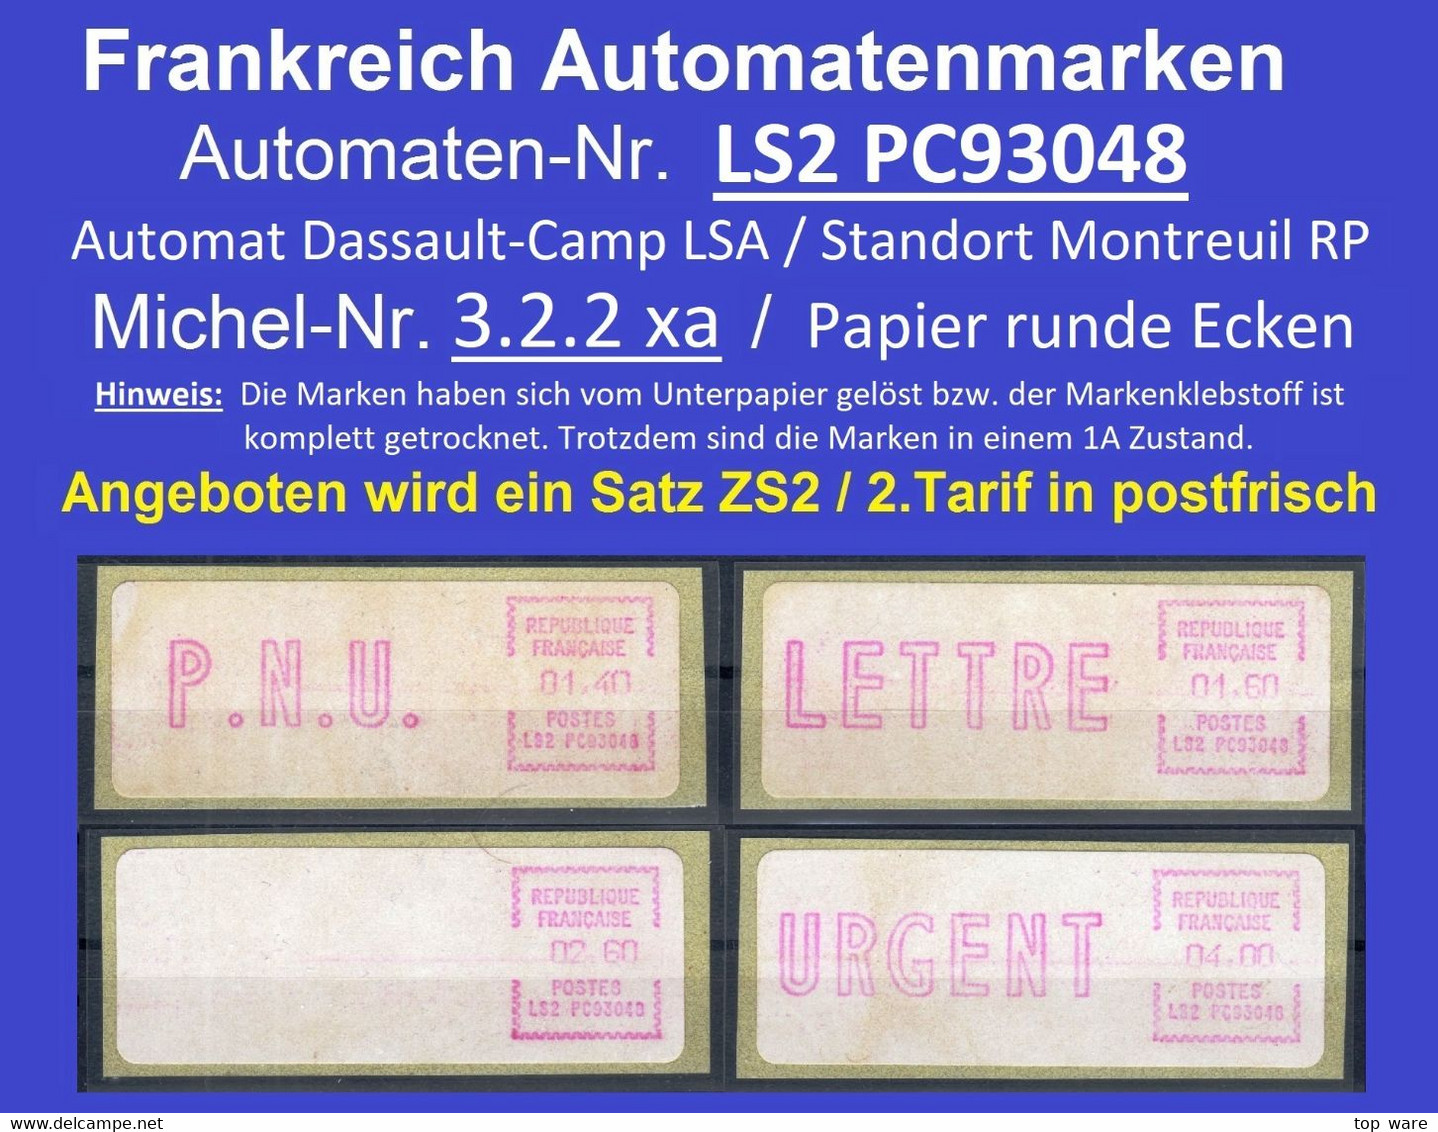 Frankreich France ATM LSA LS2 PC93048 Montreuil / Michel 3.2.2 / Satz 1.9.1981 / Distributeurs Automatenmarken Etiquetas - 1981-84 LS & LSA Prototipi